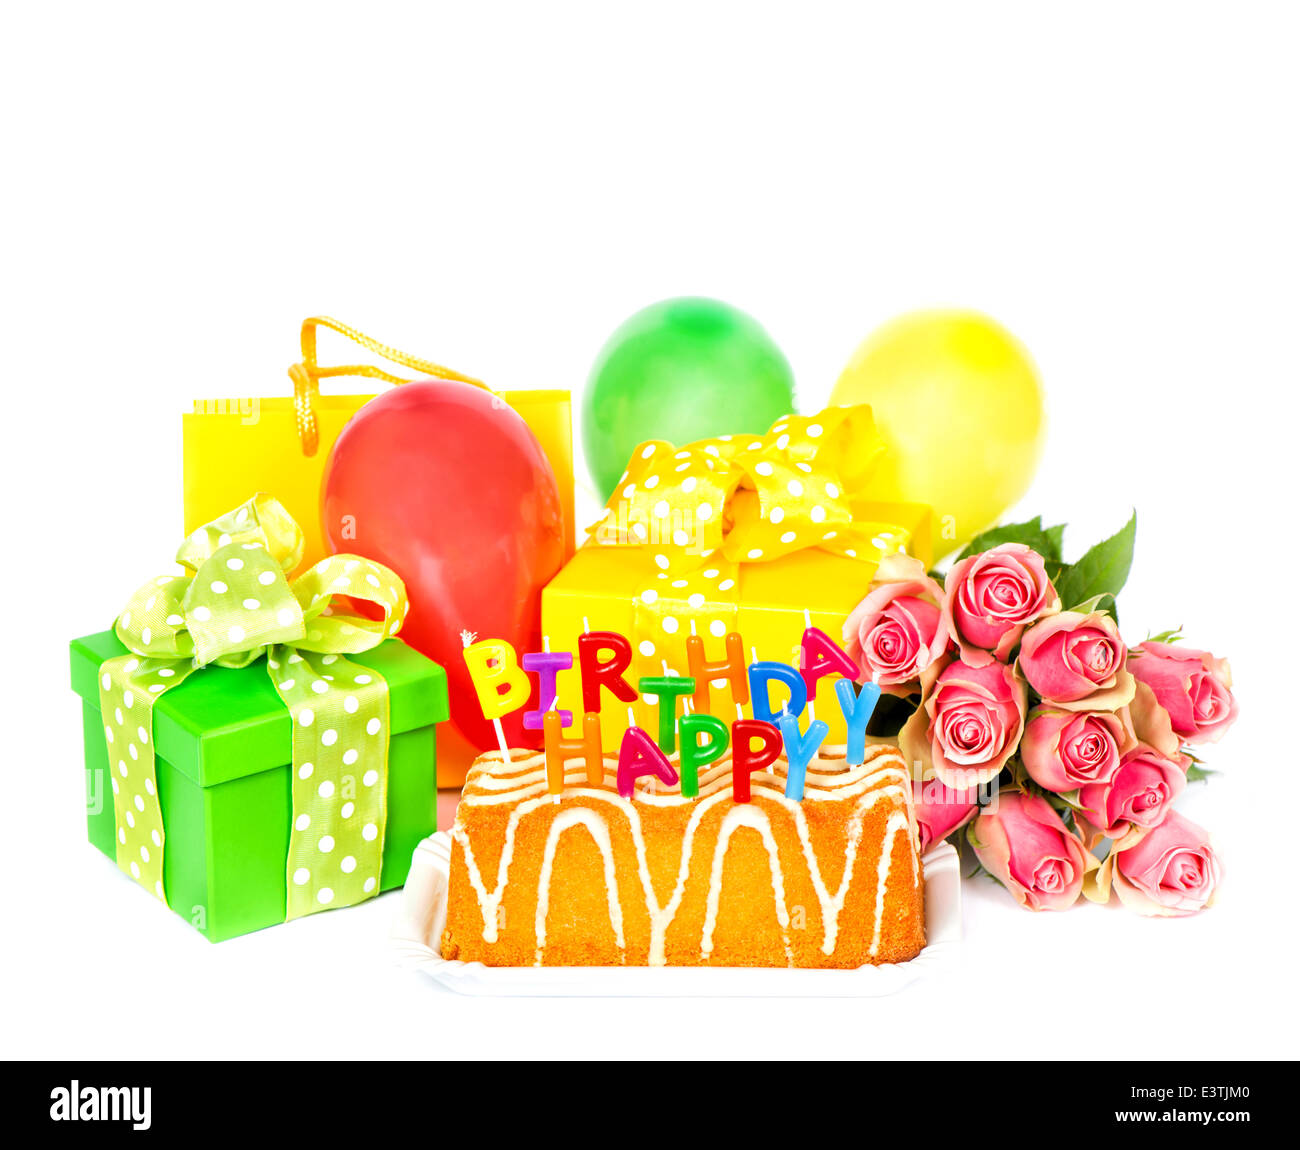 Geburtstag Party Dekoration mit Rosen-Blumen, Kuchen, Luftballons, Geschenke und Kerzen. Grußkarte-Konzept Stockfoto